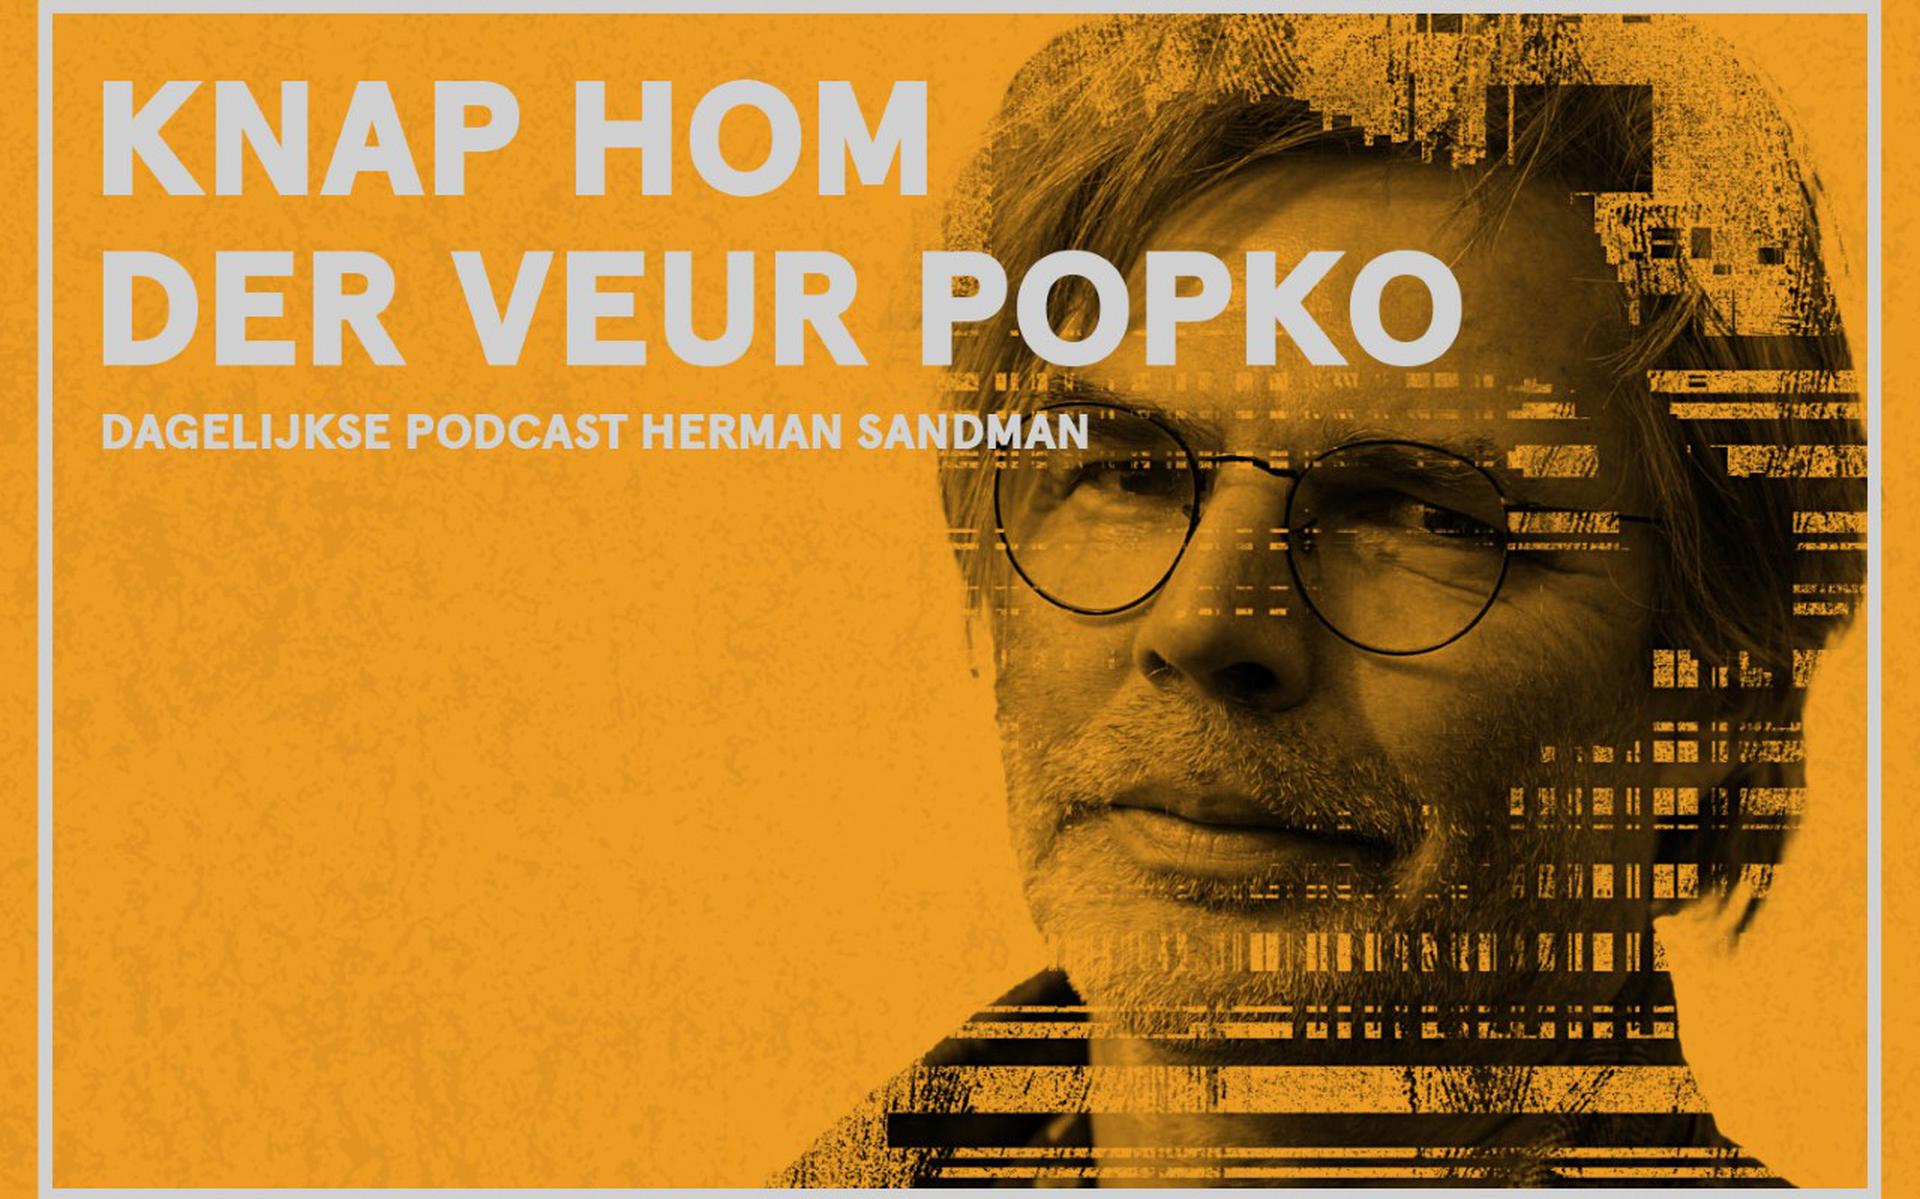 Herman Sandman is nu dagelijks te beluisteren in de podcast 'Knap hom der veur Popko'.